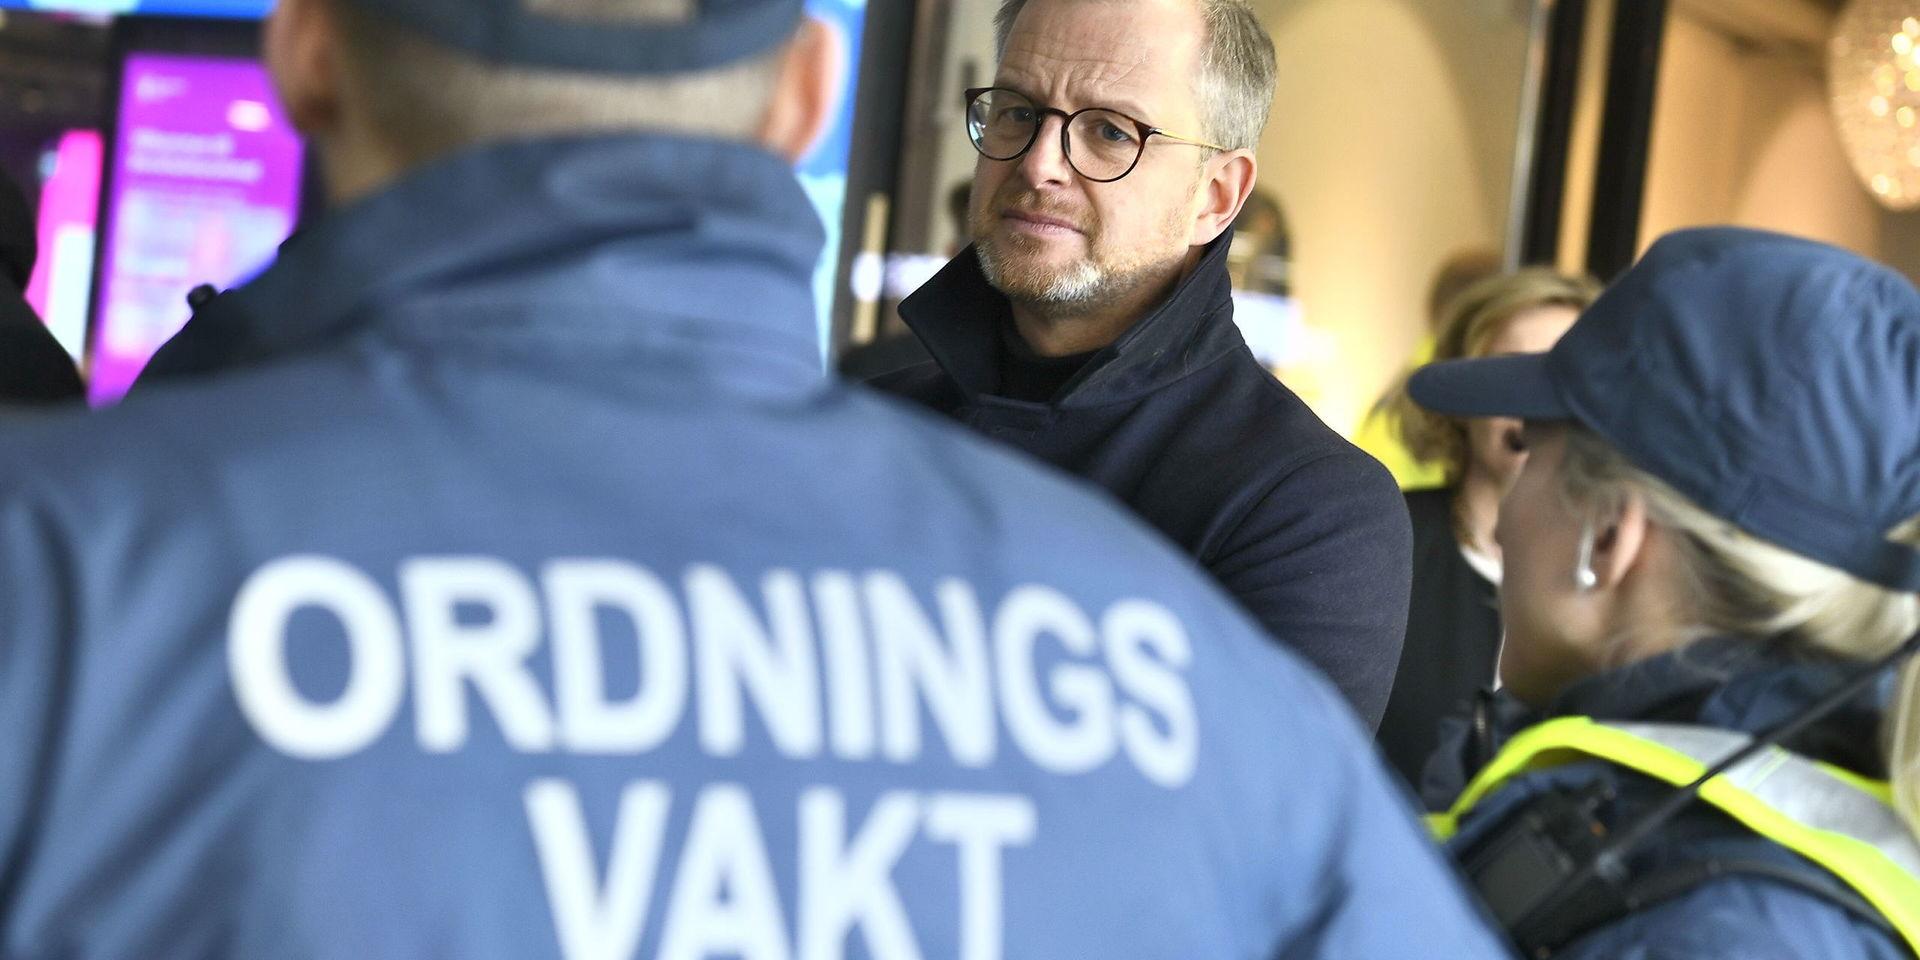 Inrikesminister Mikael Damberg (S) vill se över det 40 år gamla regelverket för ordningsvakter från grunden.